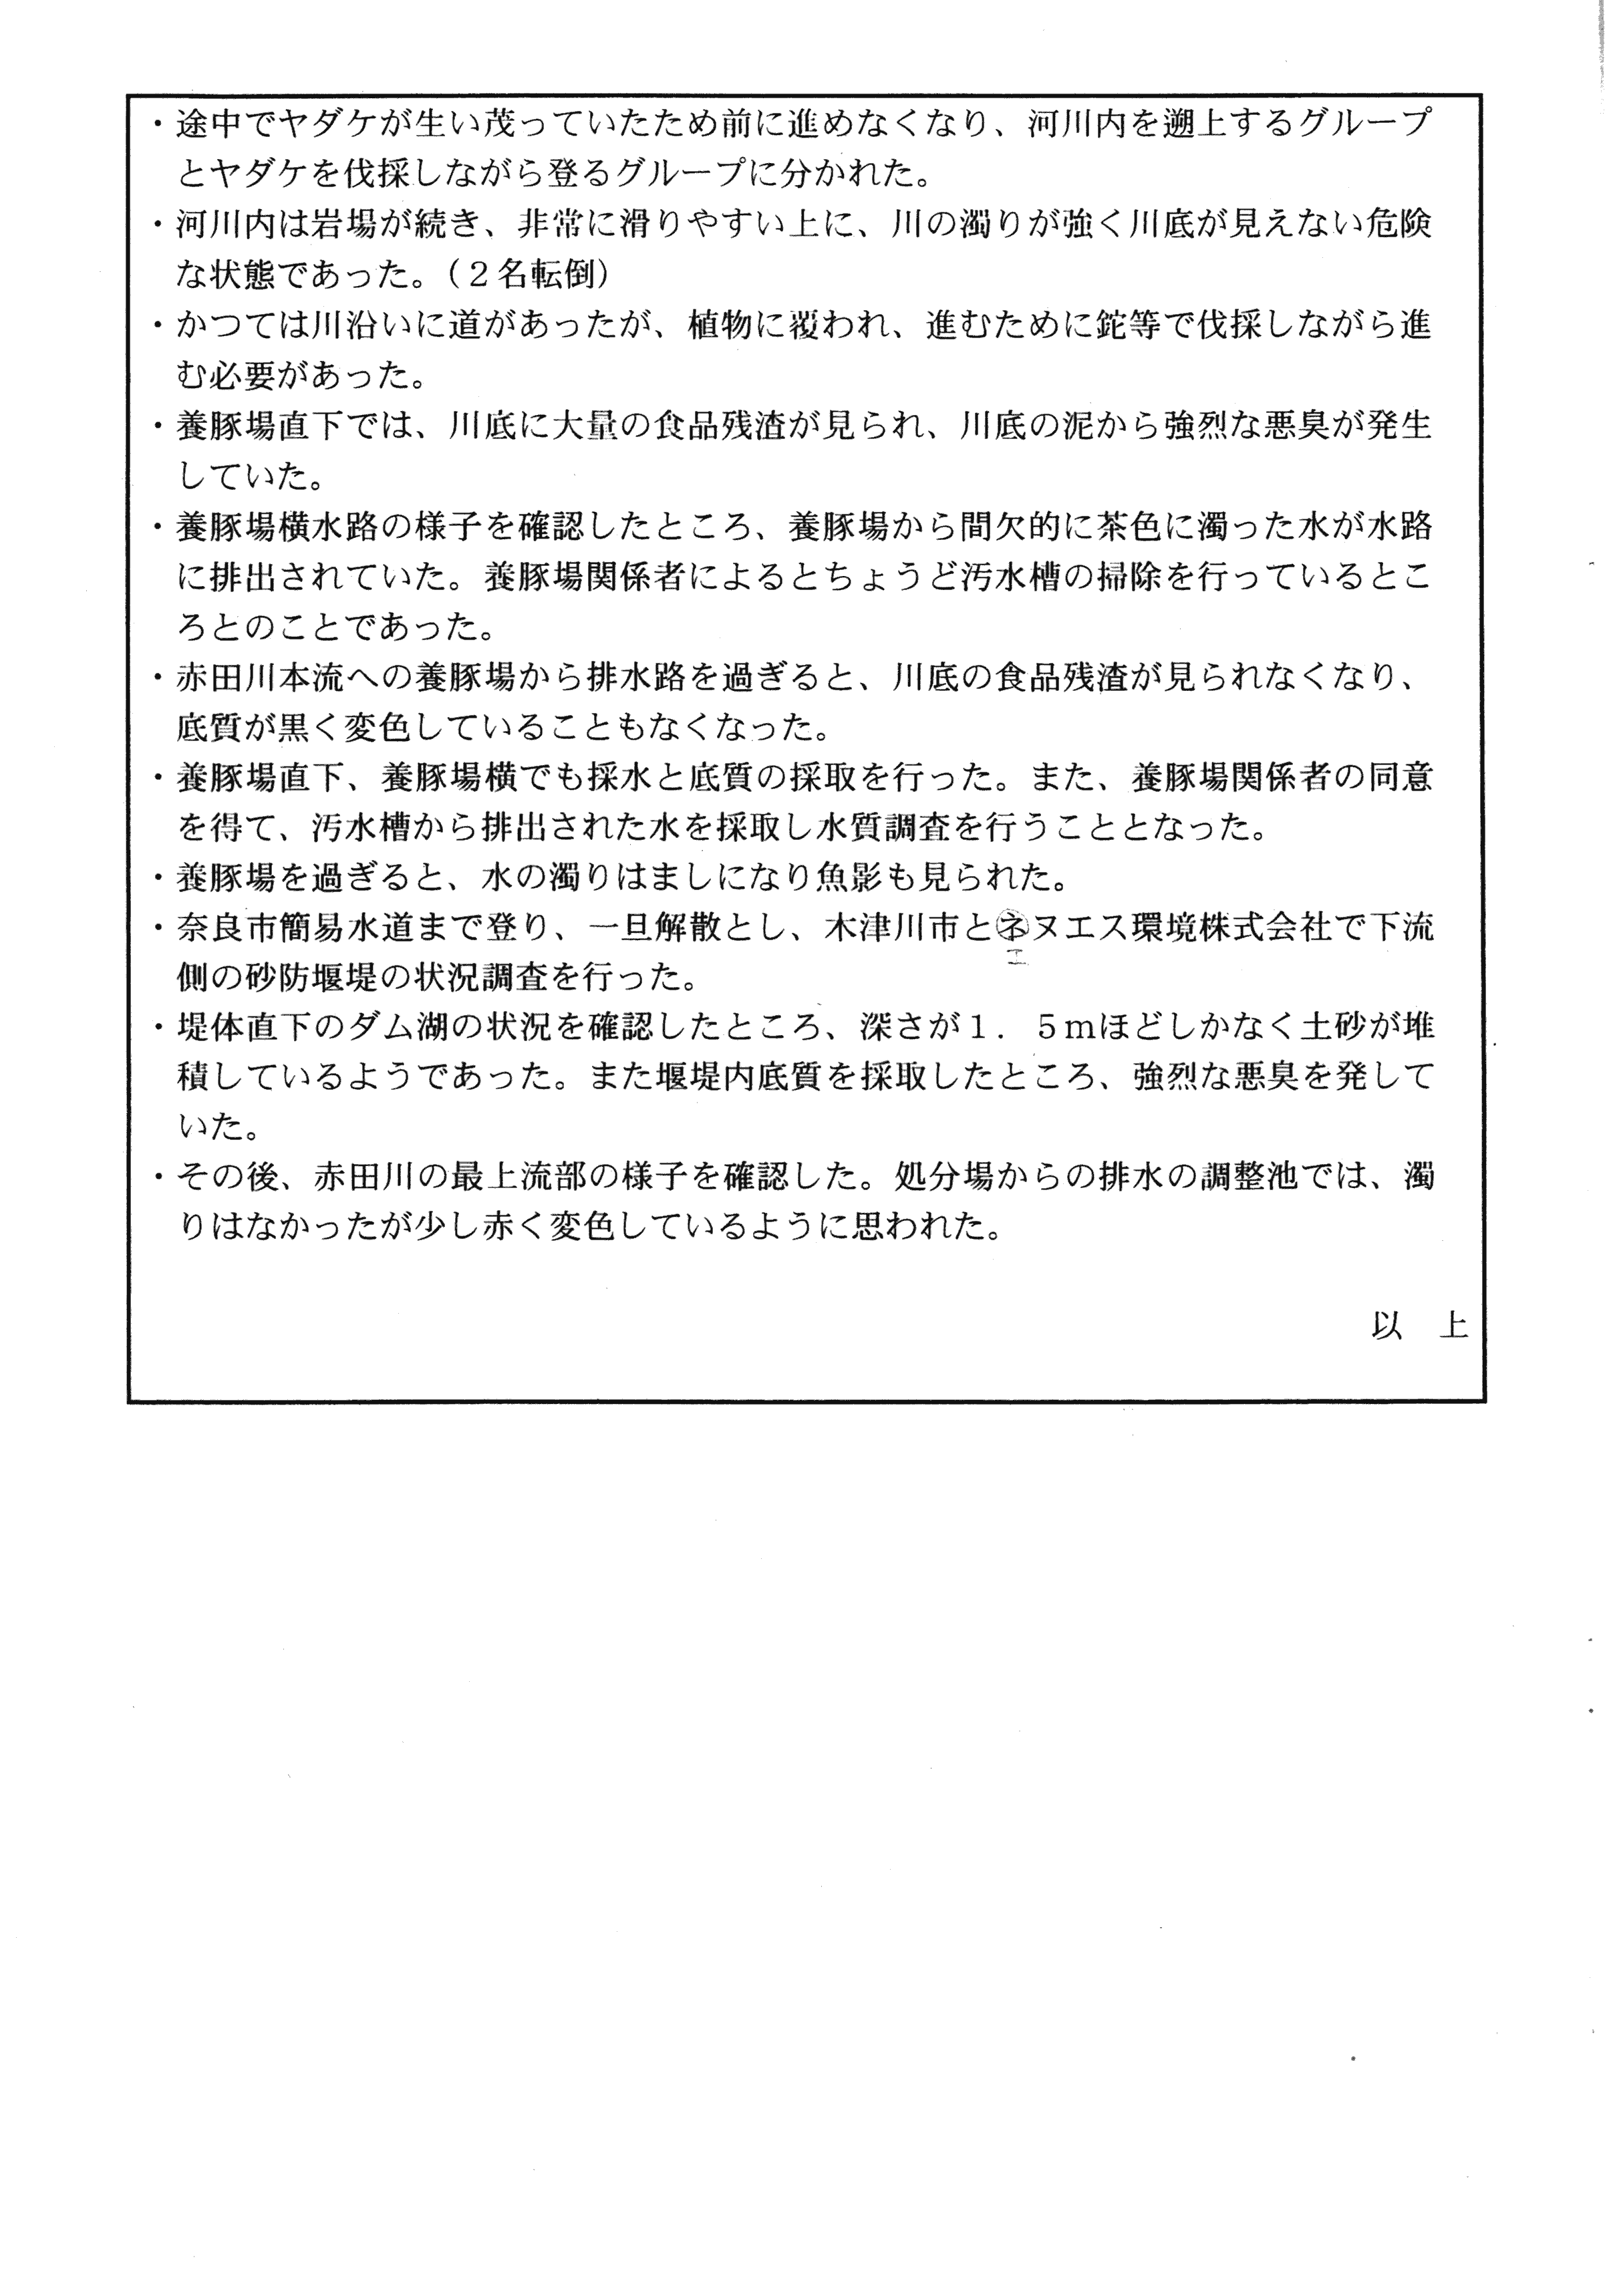 平成29年5月30日-赤田川水質汚濁状況調査の実施について-02